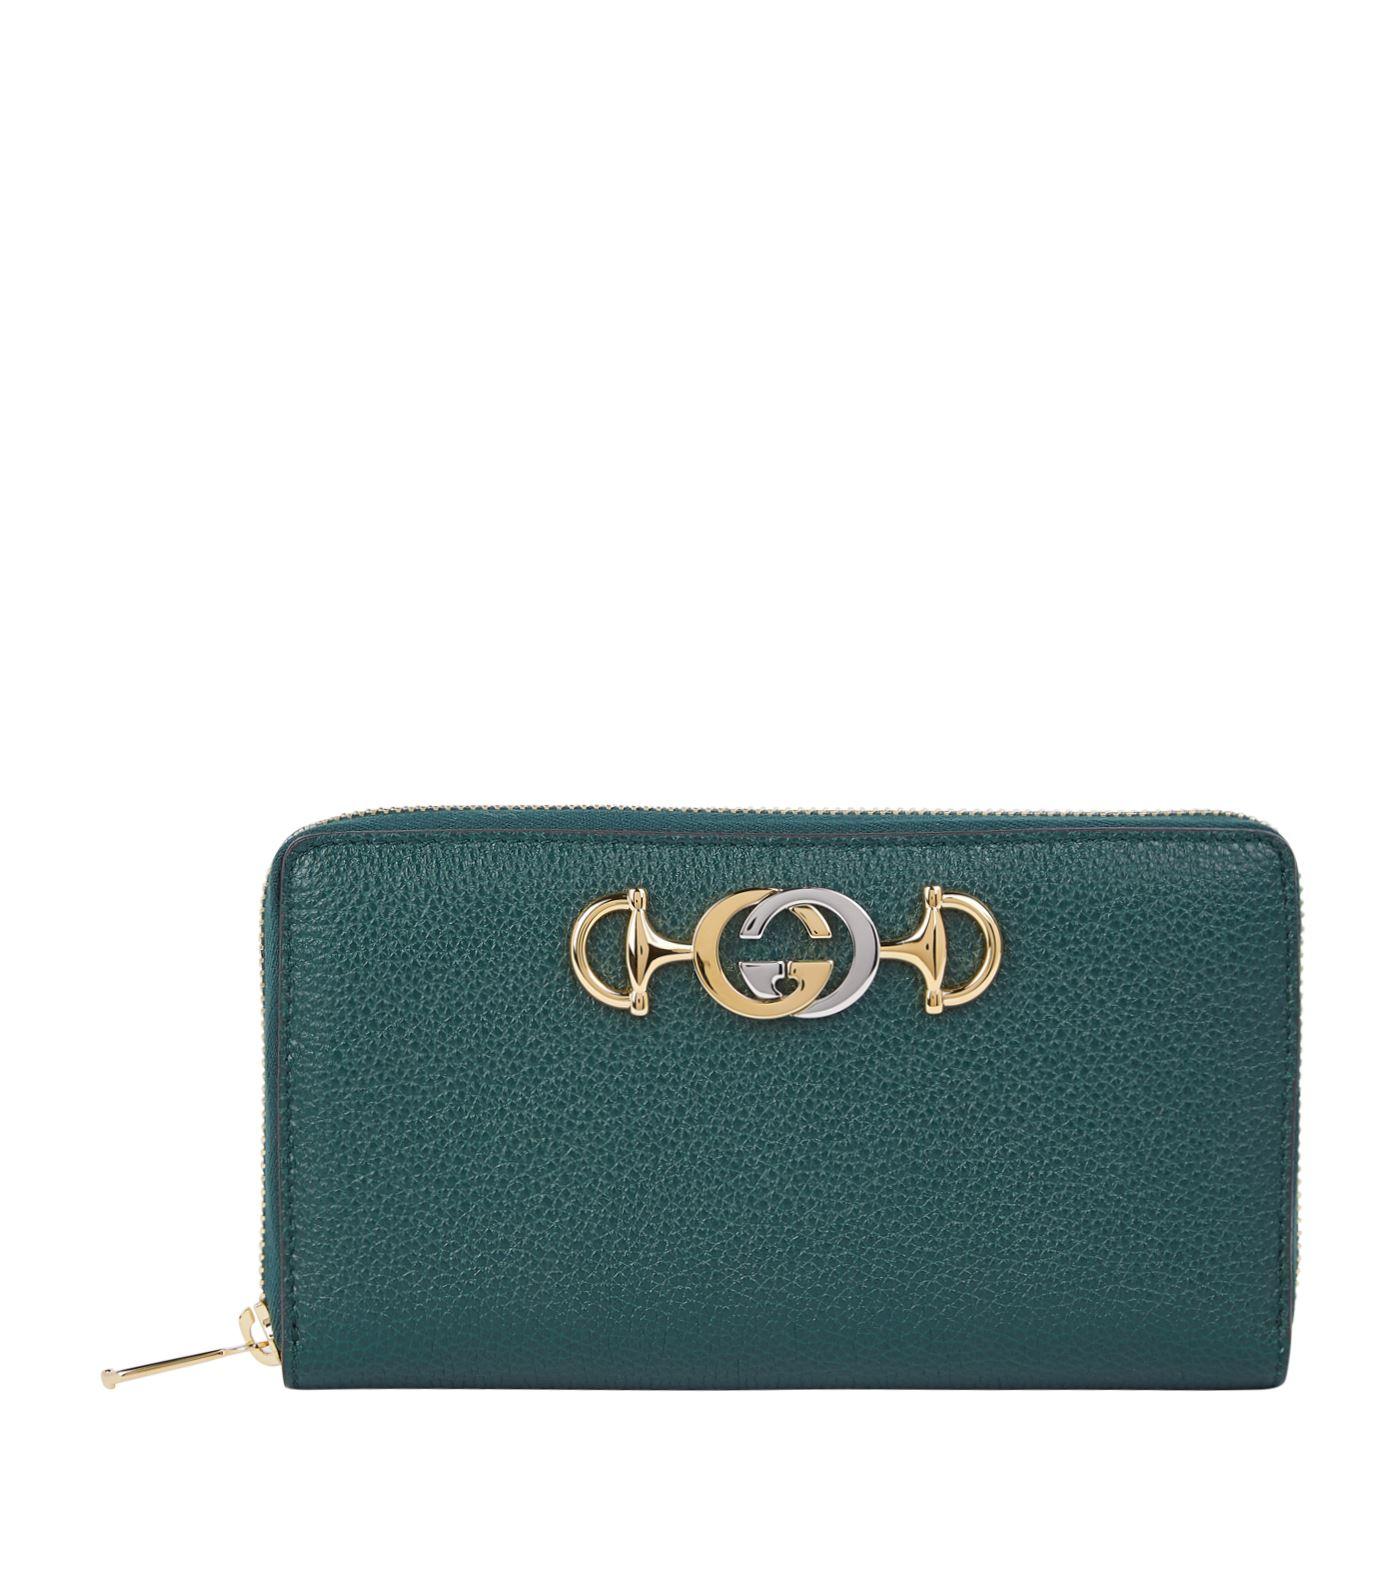 Gucci Zumi 548 Zip-around Leather Wallet in Green | Lyst